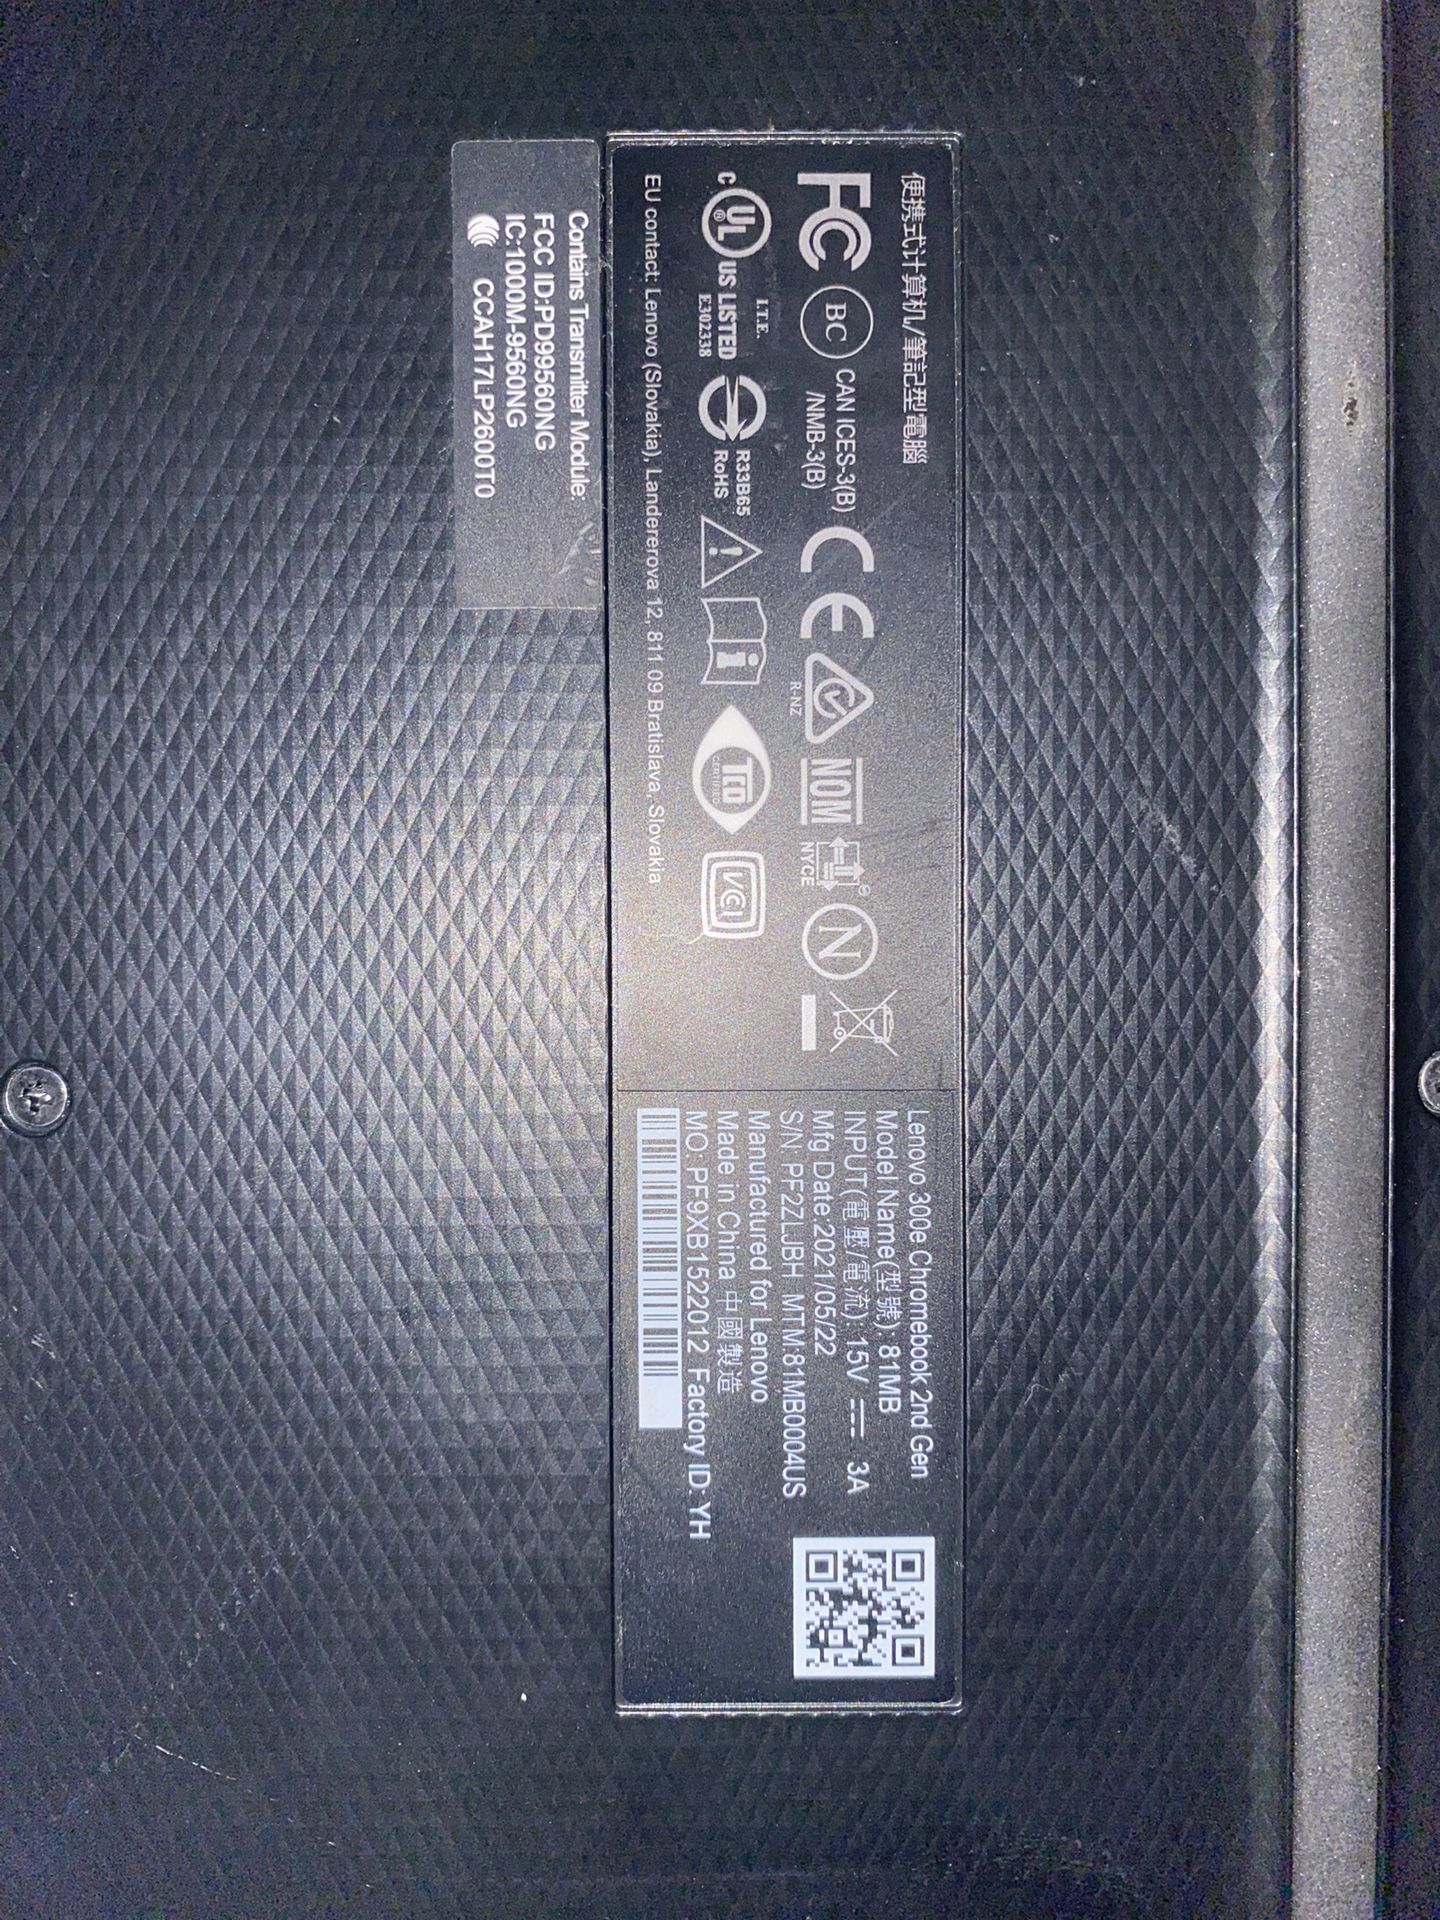 Lenovo 300se Gen 2 Chromebook